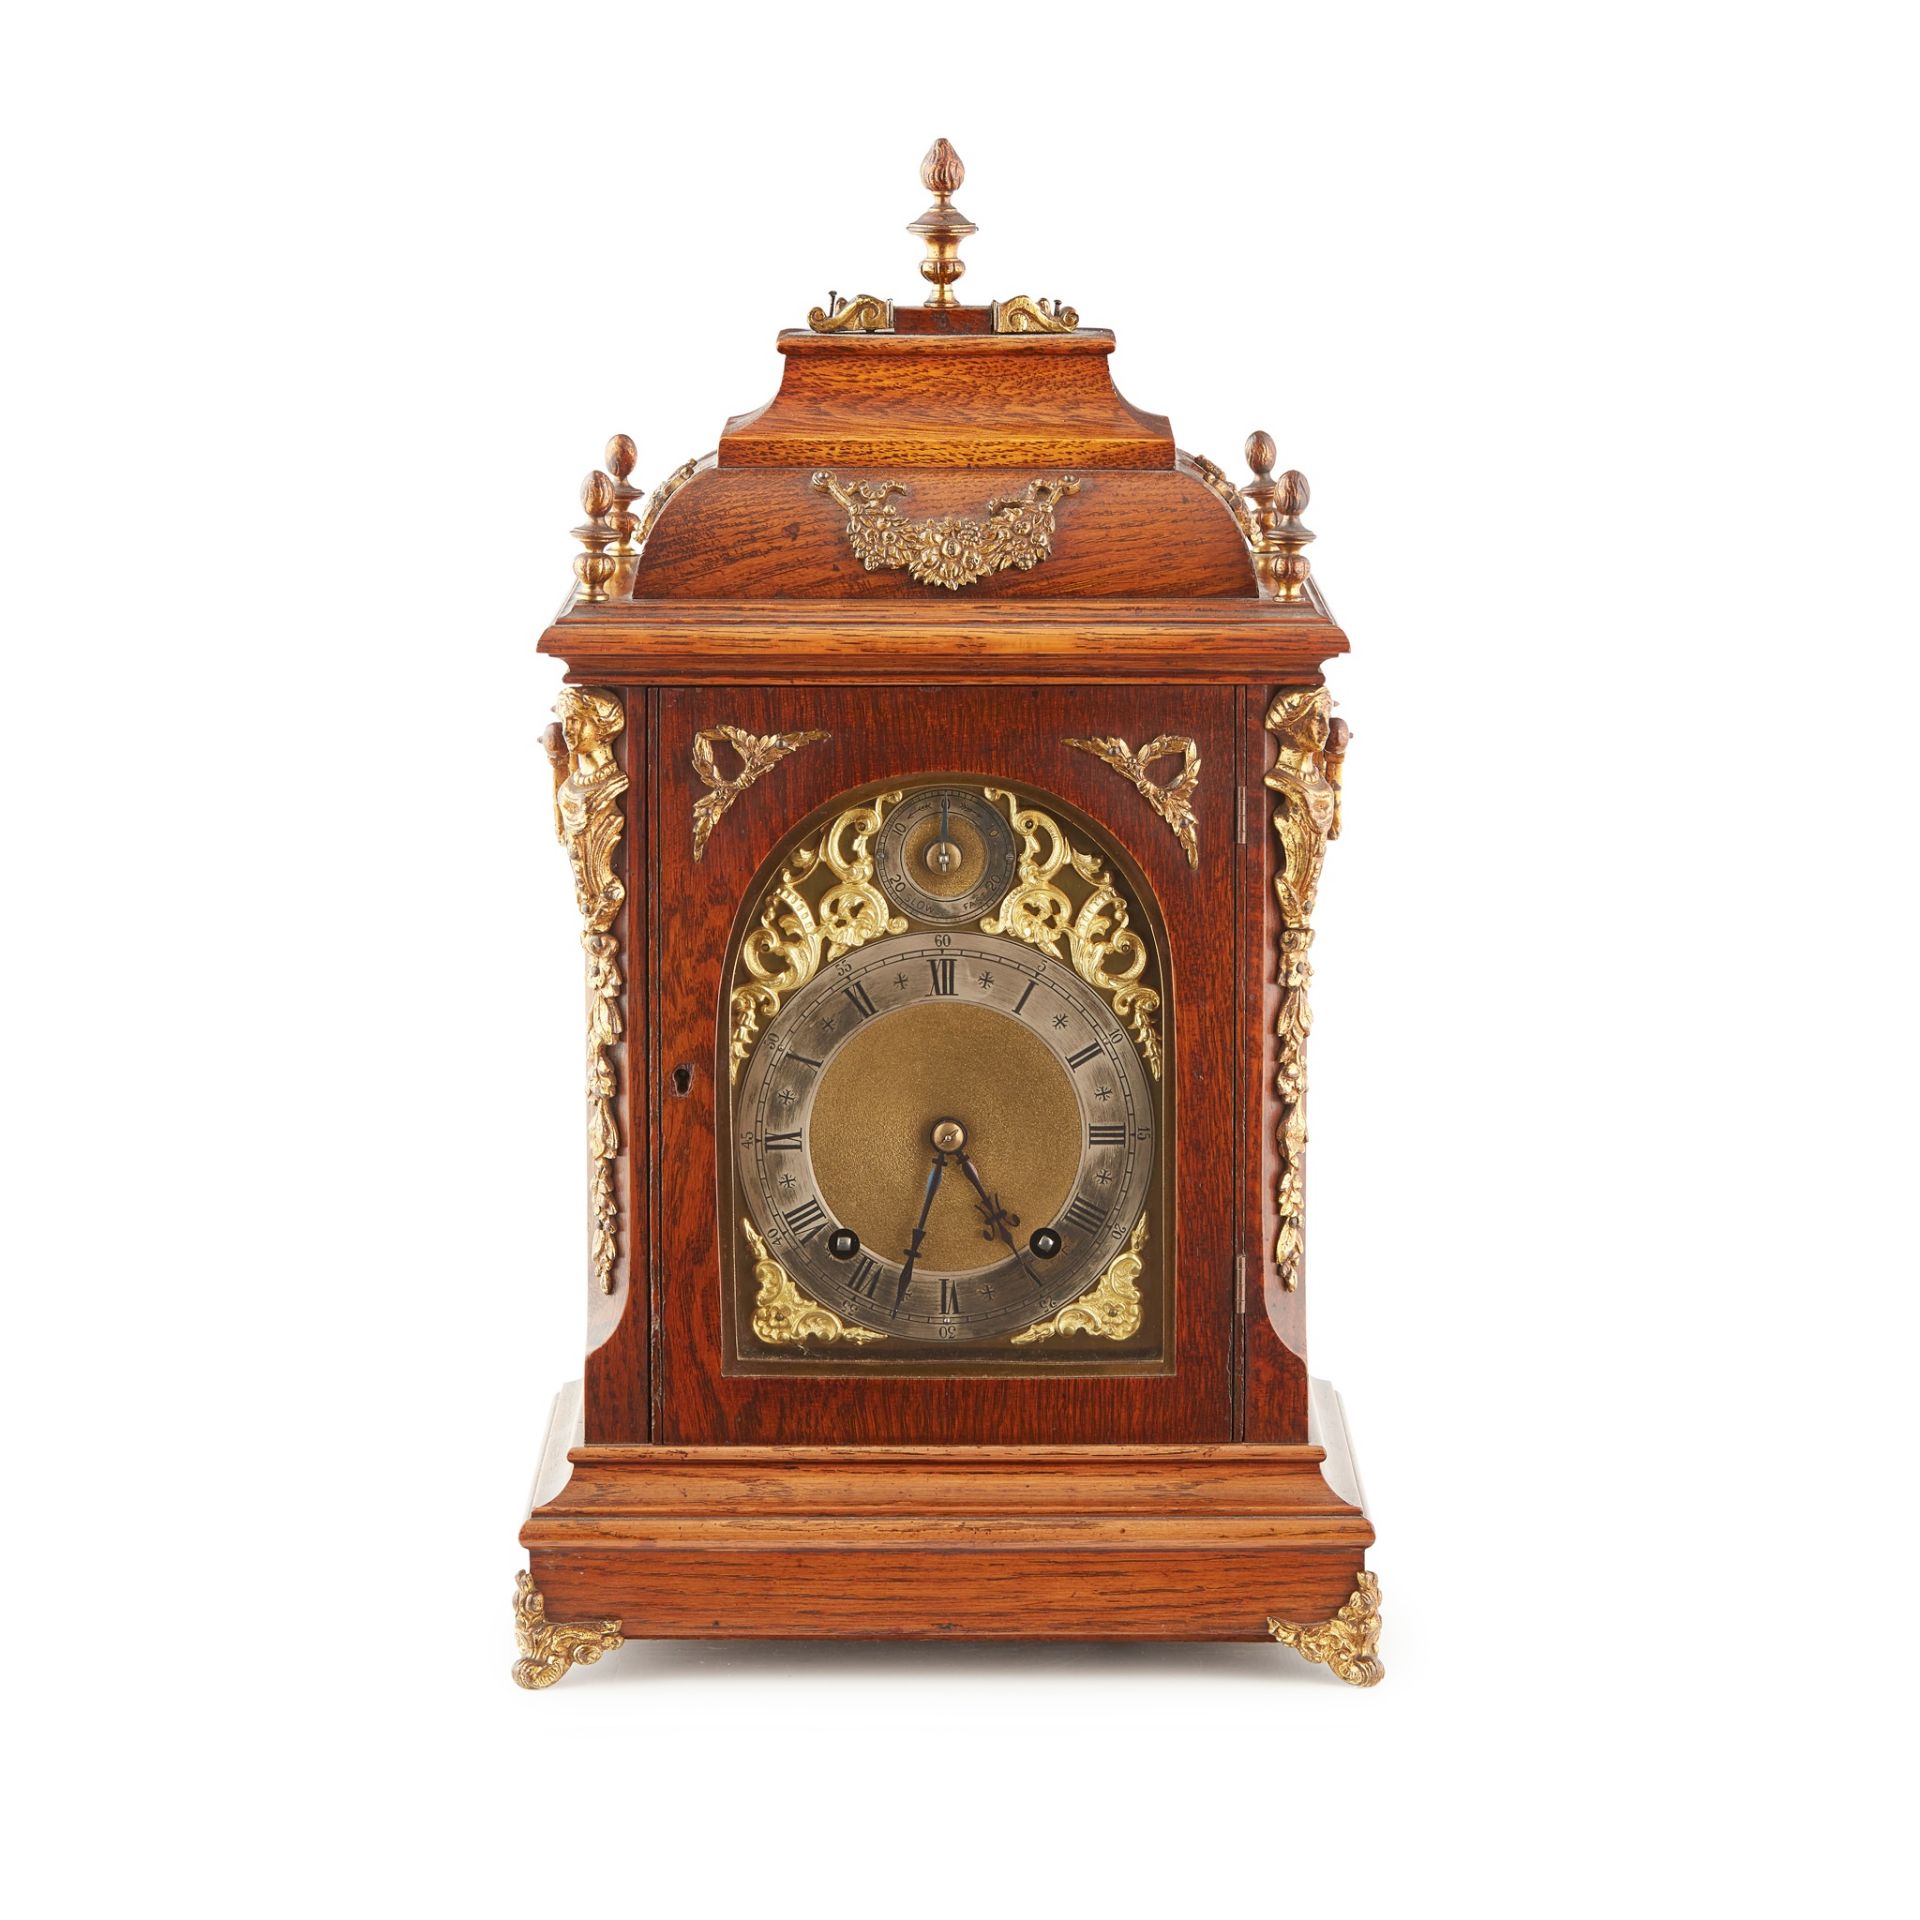 OAK BRACKET CLOCK, WINTERHALDER & HOFMEIER LATE 19TH CENTURY